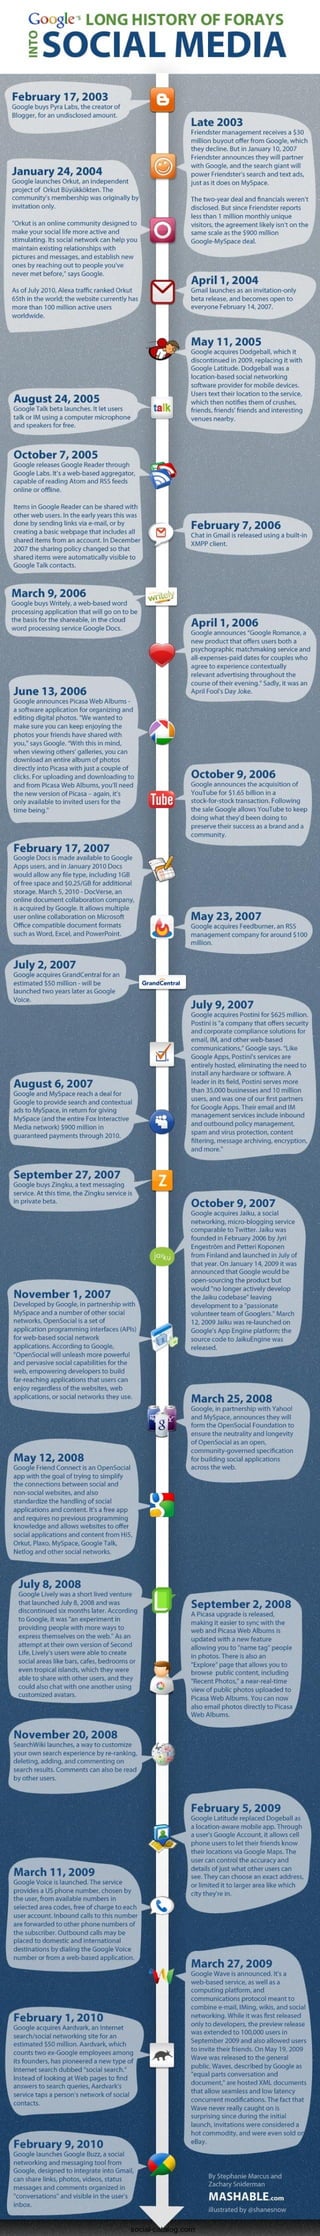 Google's History Of Social Media